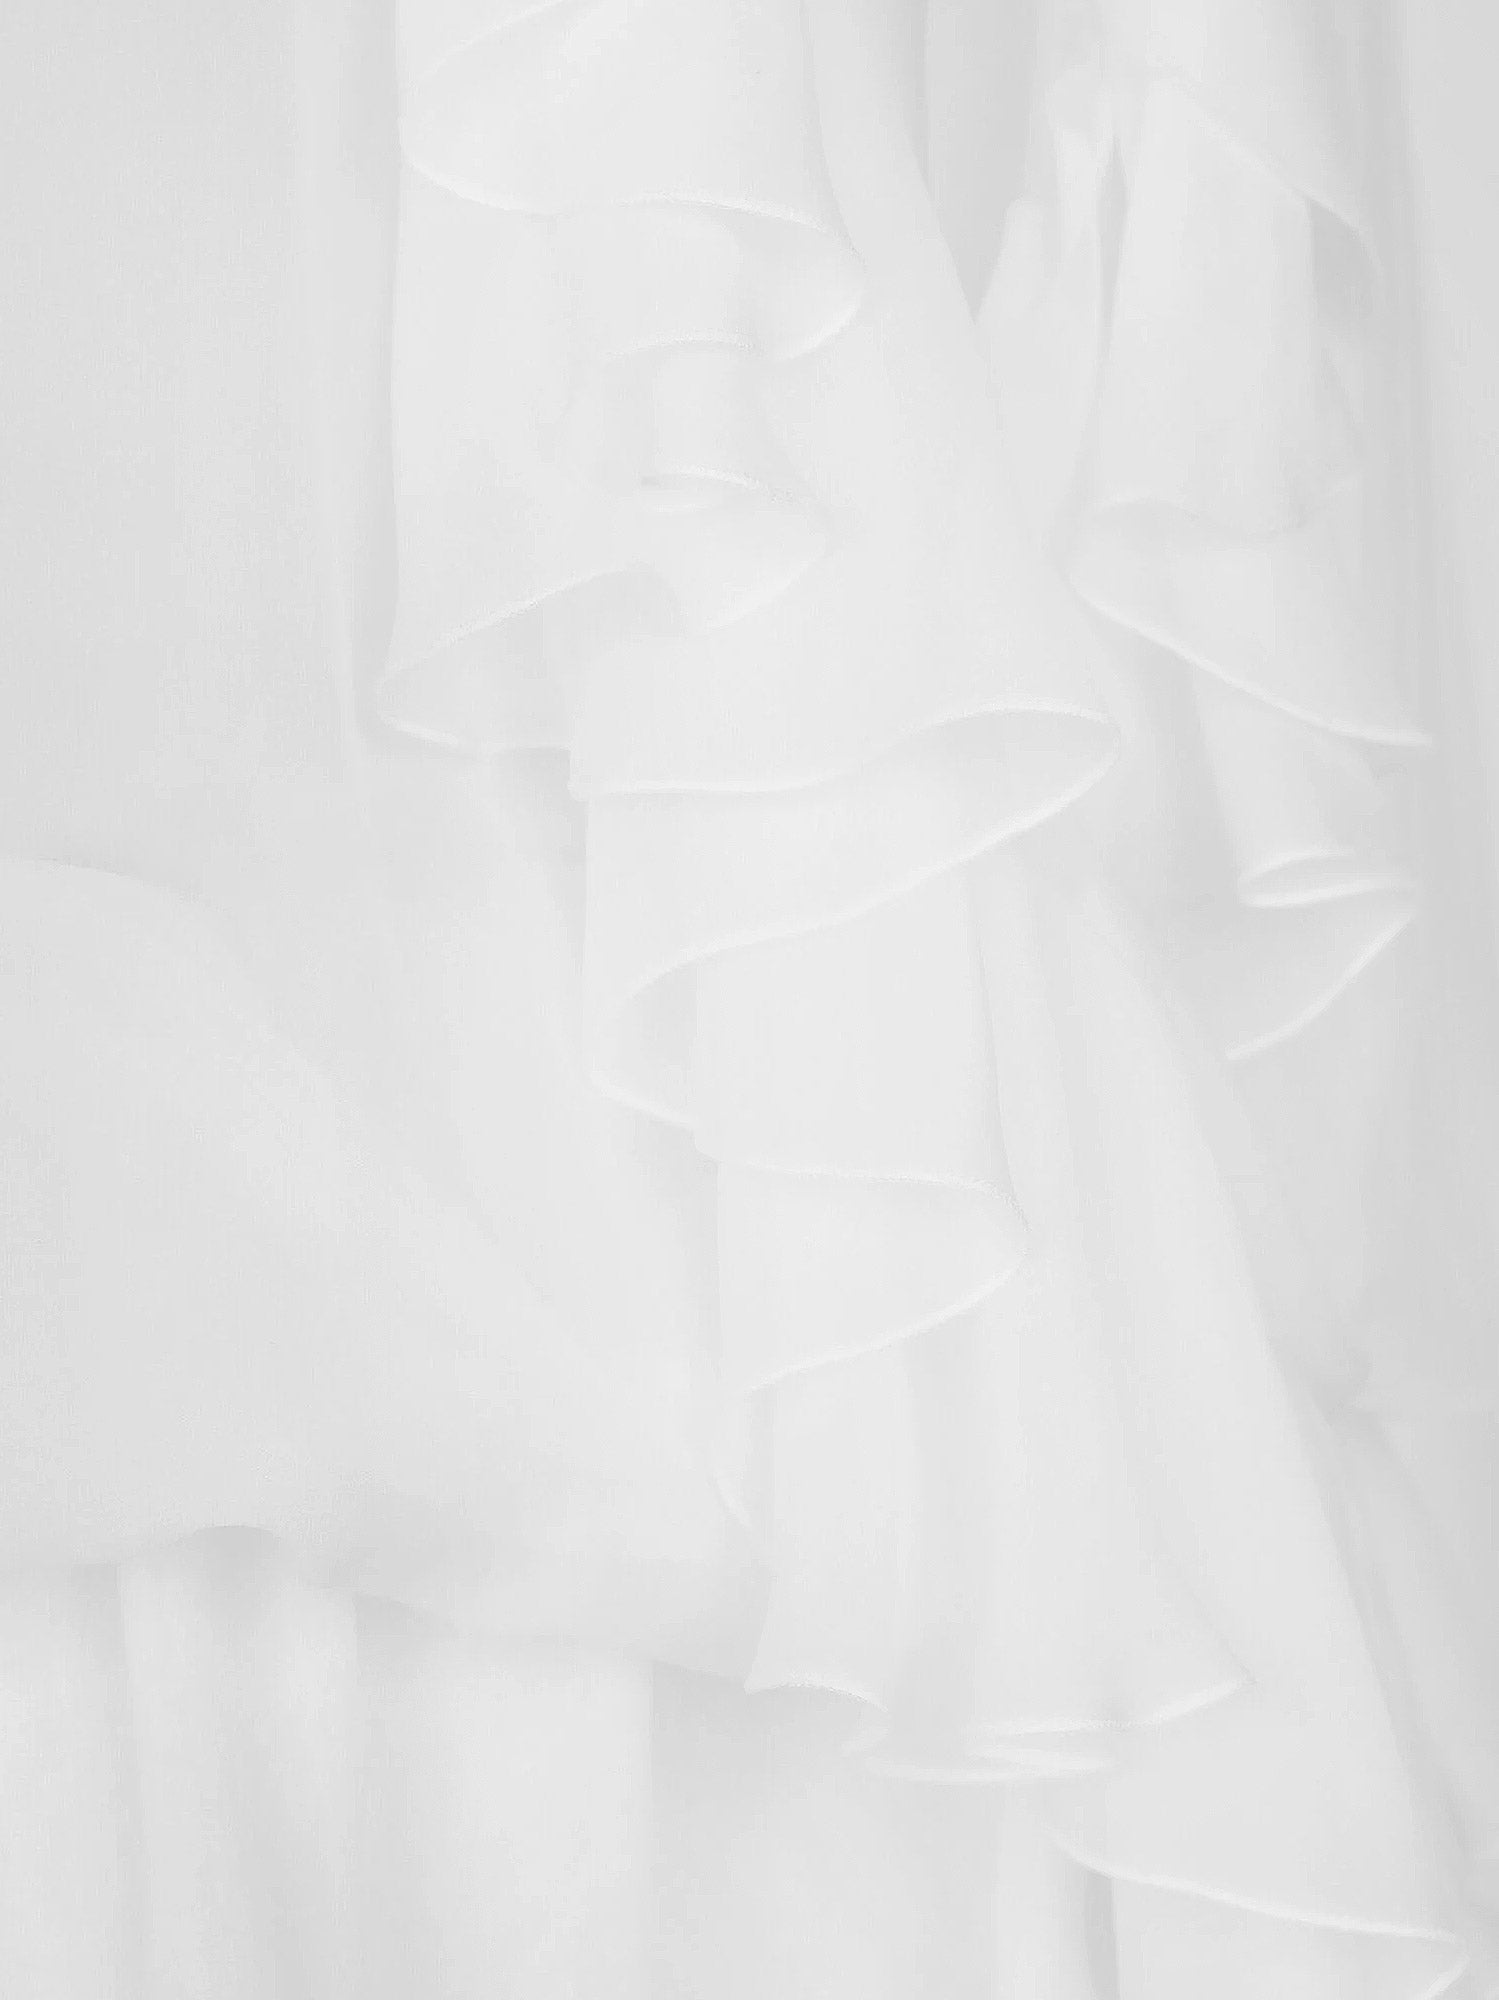 Shop Dolce & Gabbana Woman Shirt Woman White Shirts